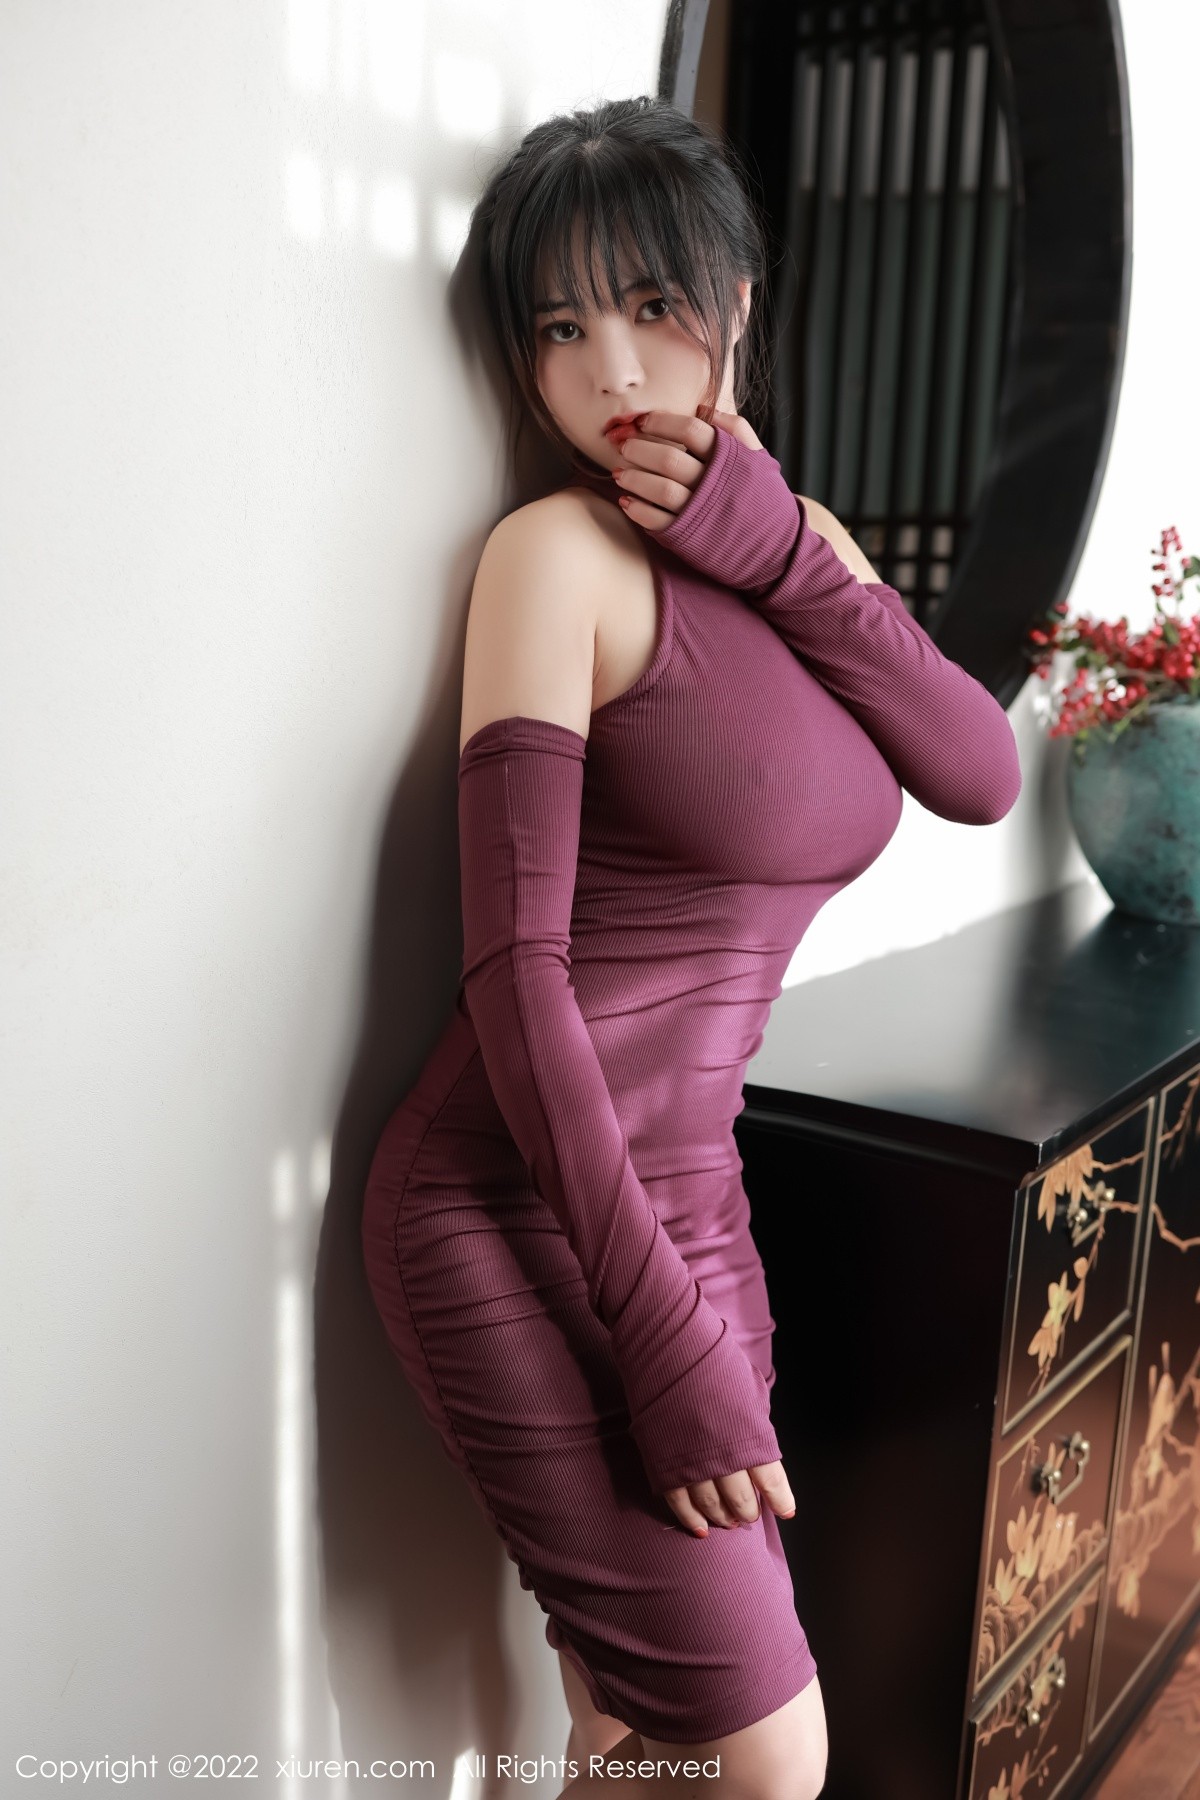 模特奈沐子澳门旅拍室内场景紫红色连衣裙秀曼妙身材诱惑写真